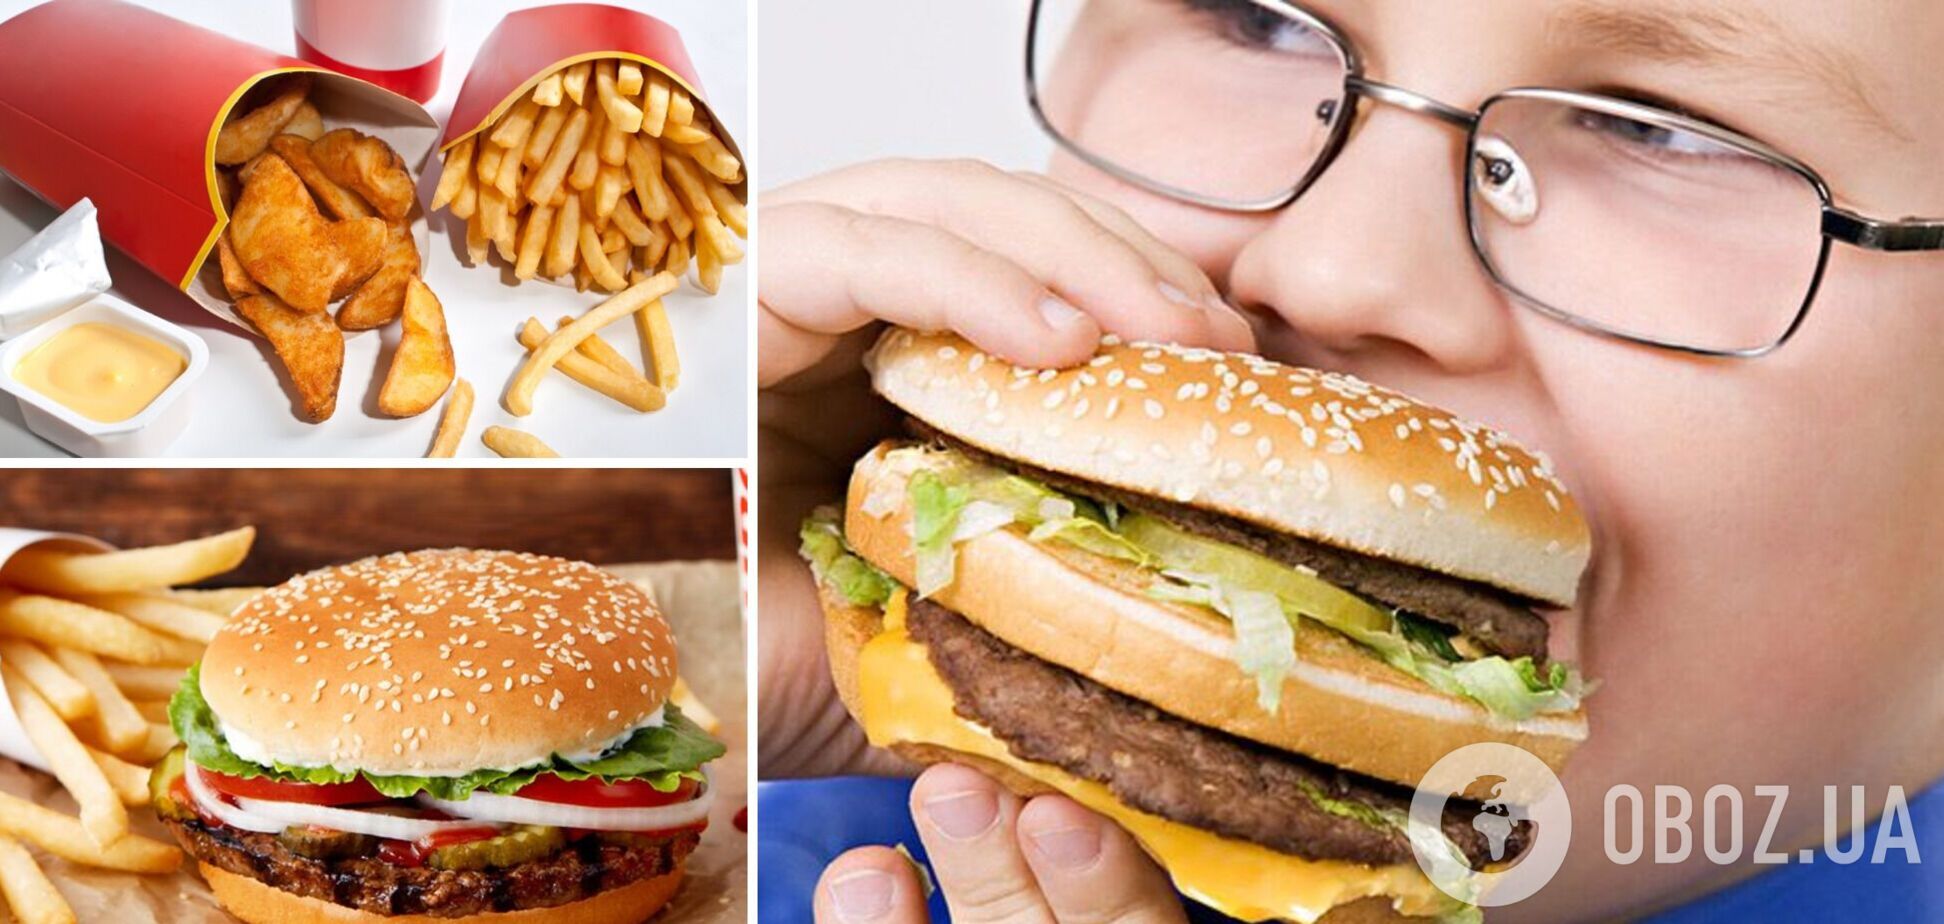 Вредная еда ухудшает зрение? Описан случай слепоты